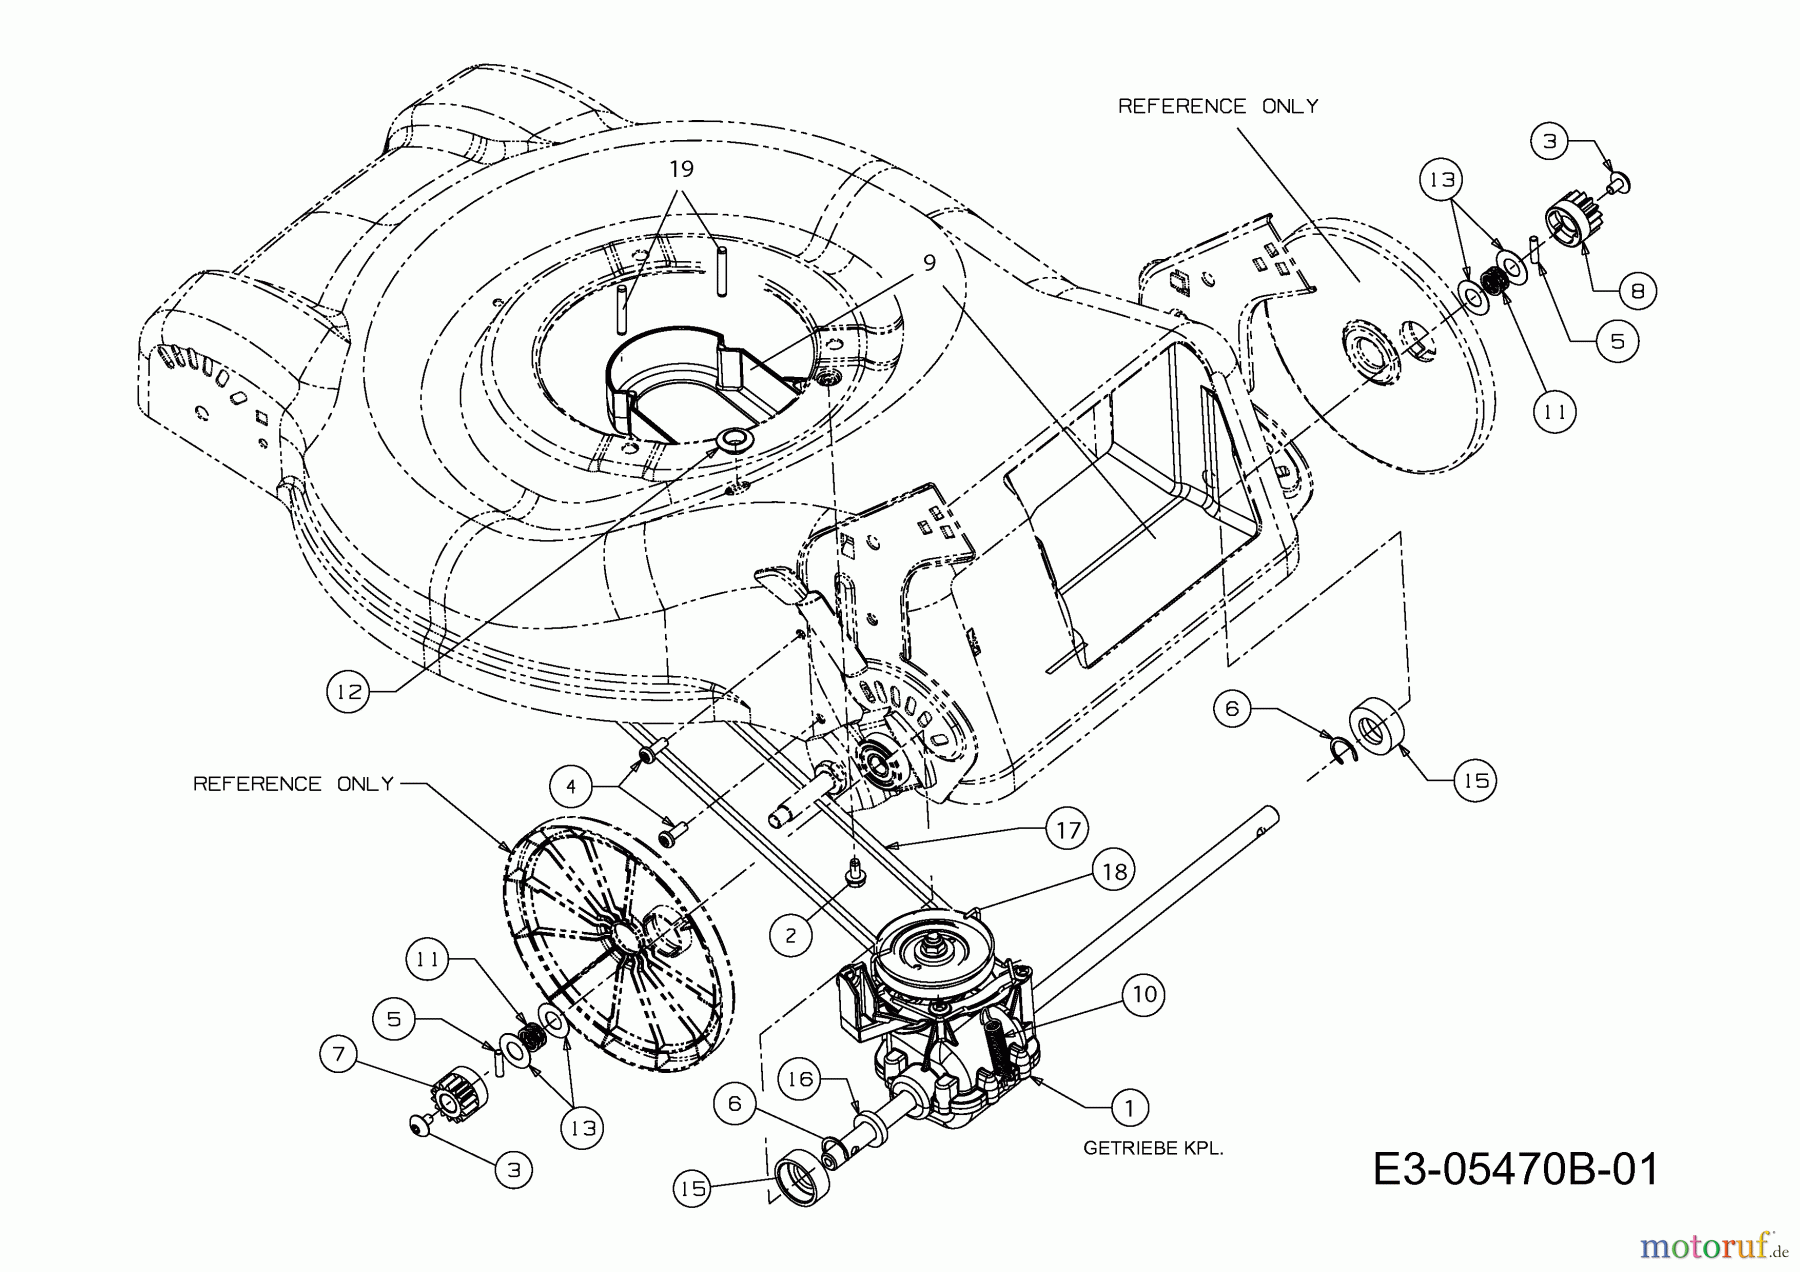  Preisfuxx Motormäher mit Antrieb PF 46 A 12E-J2JD628  (2013) Getriebe